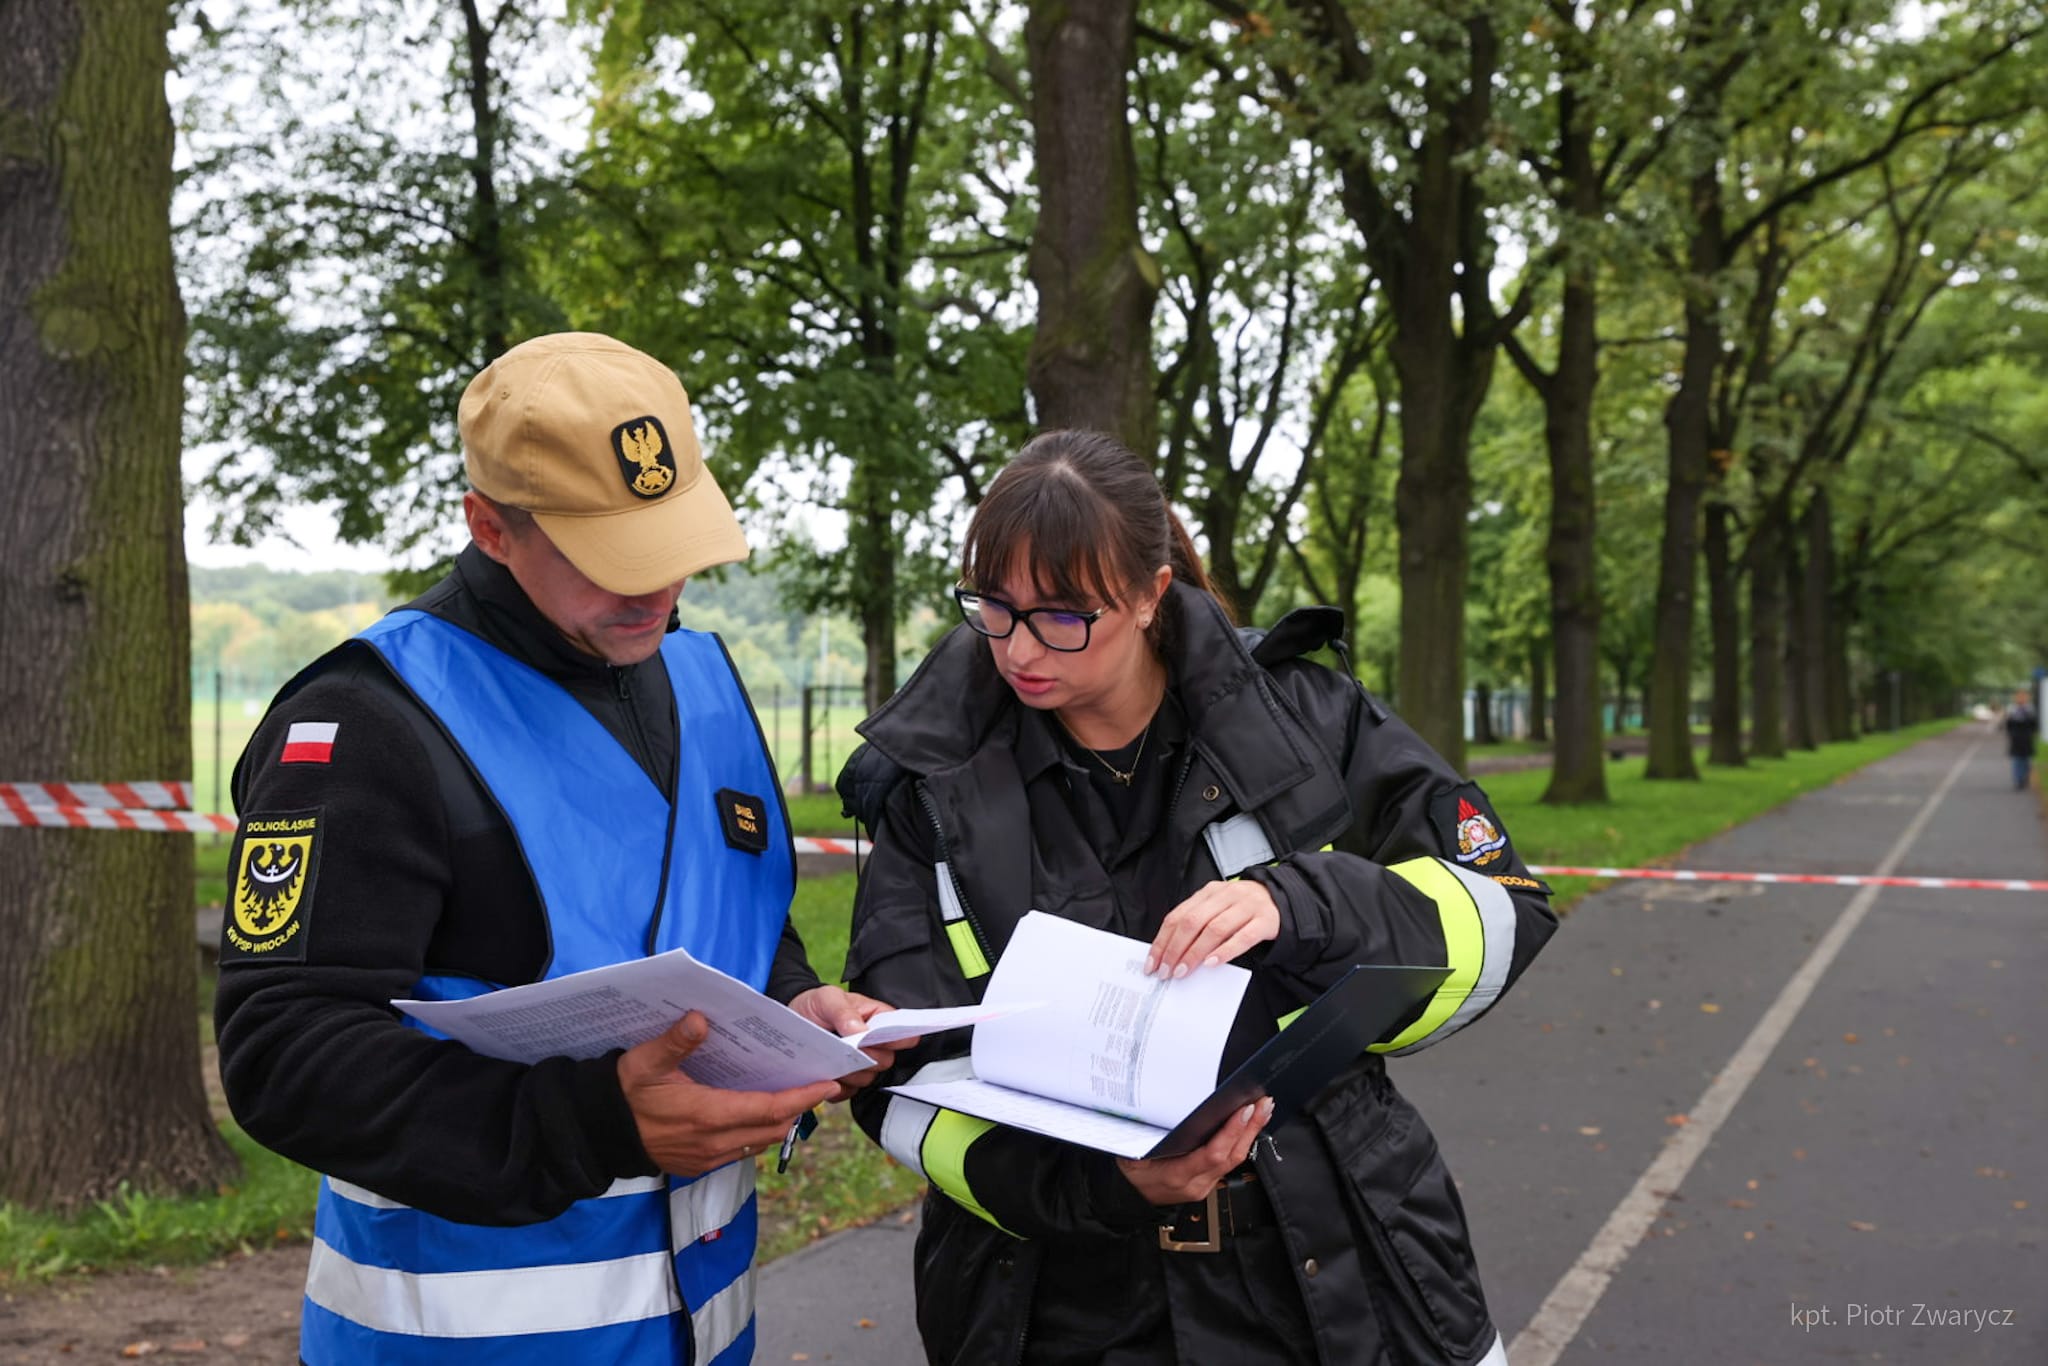 Dwóch strażaków (mężczyzna i kobieta) rozmawiają czytając dokumenty podczas ćwiczeń, za nimi widoczna droga i drzewa na poboczu